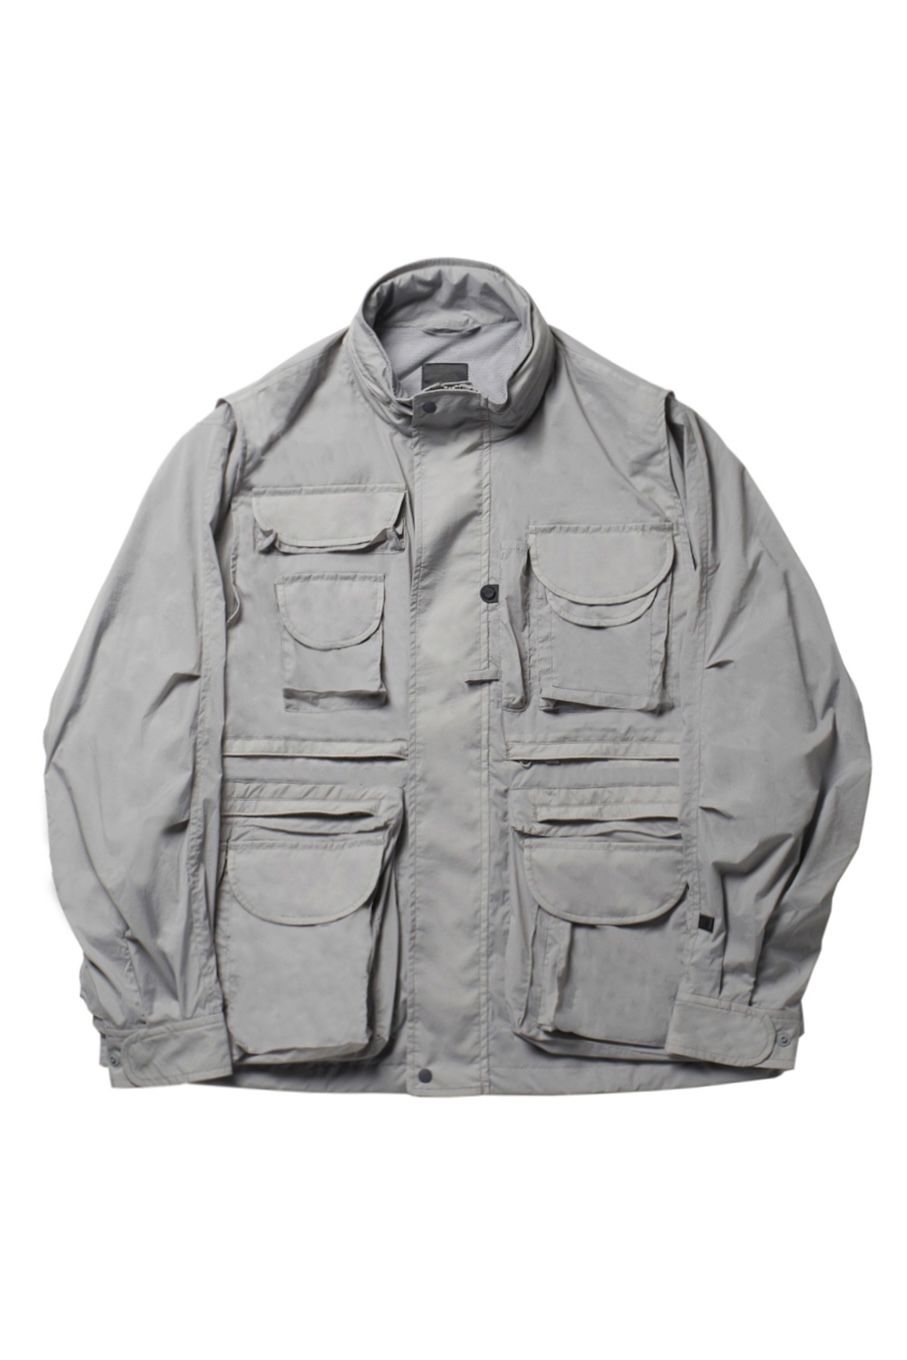 パーフェクトフィッシングジャケット/tech 2way perfect fishing jacket -gray- 23ss men - S